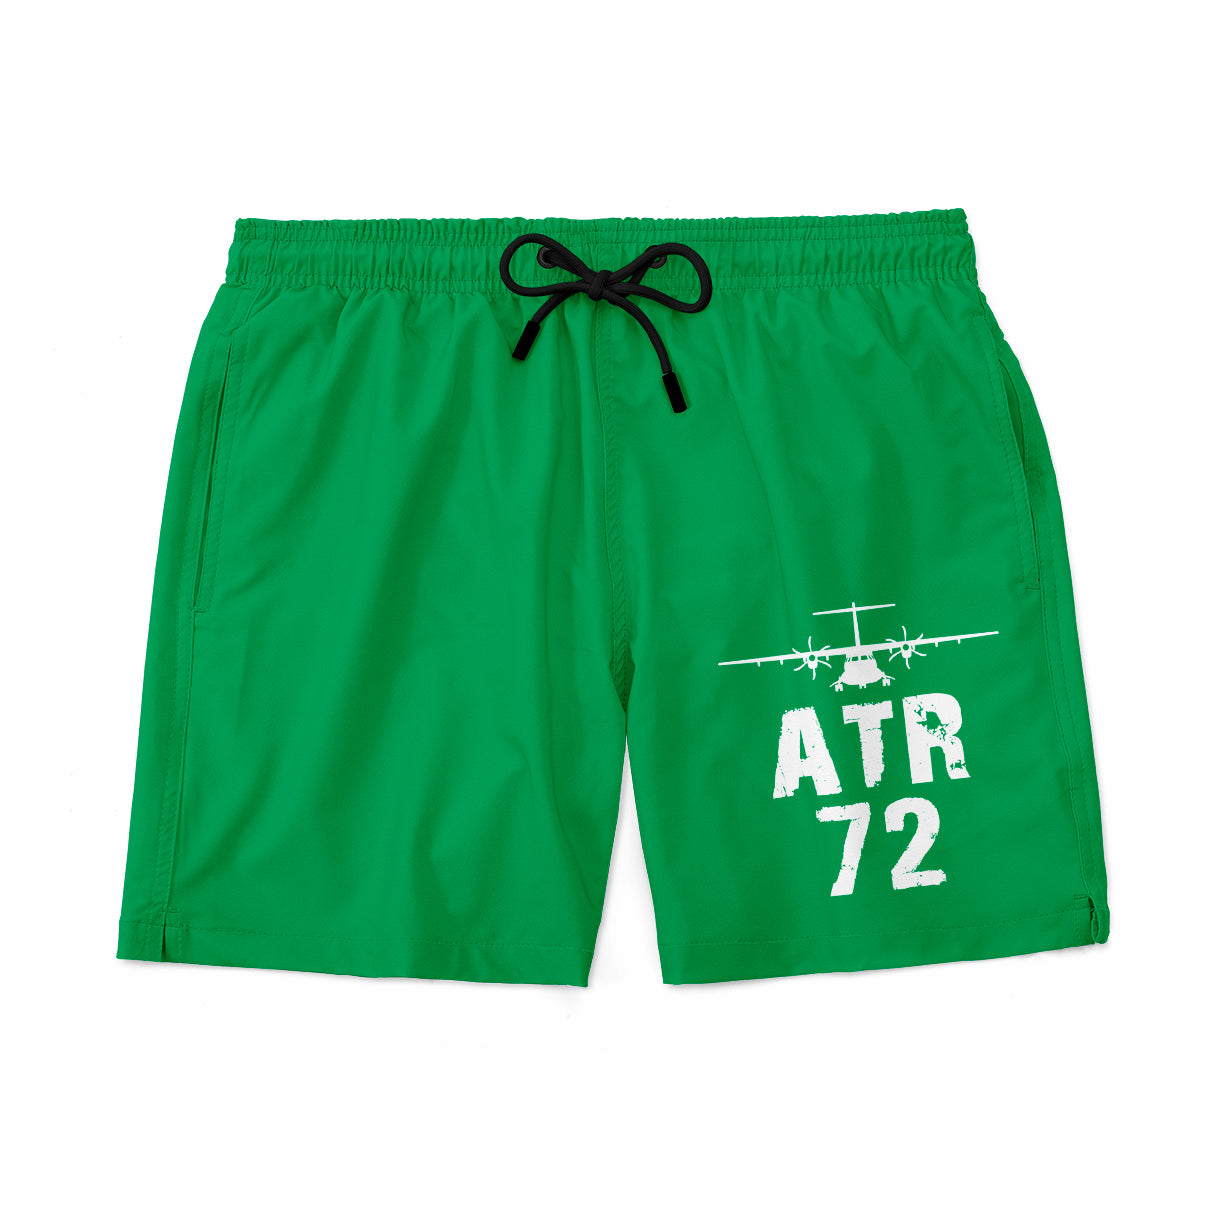 ATR-72 & Plane Designed Swim Trunks & Shorts